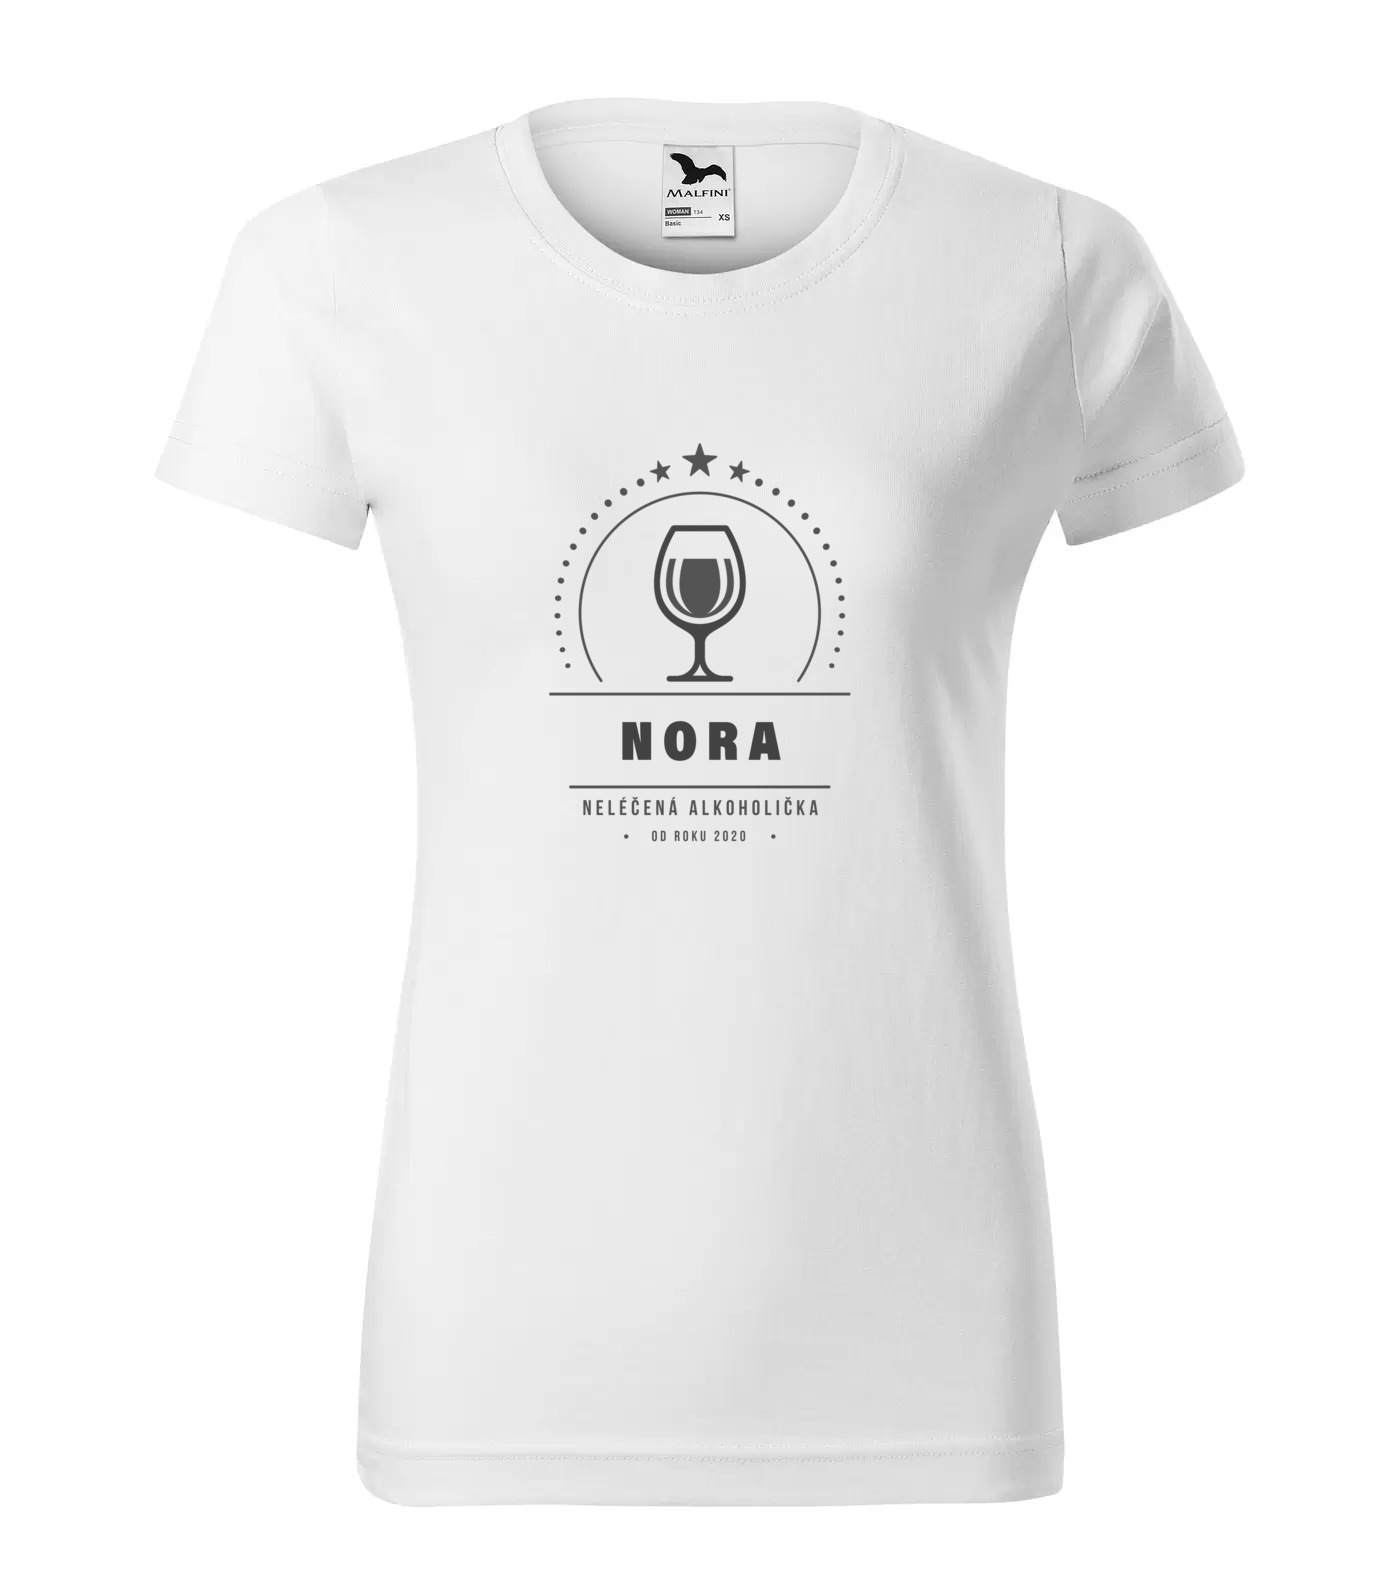 Tričko Alkoholička Nora